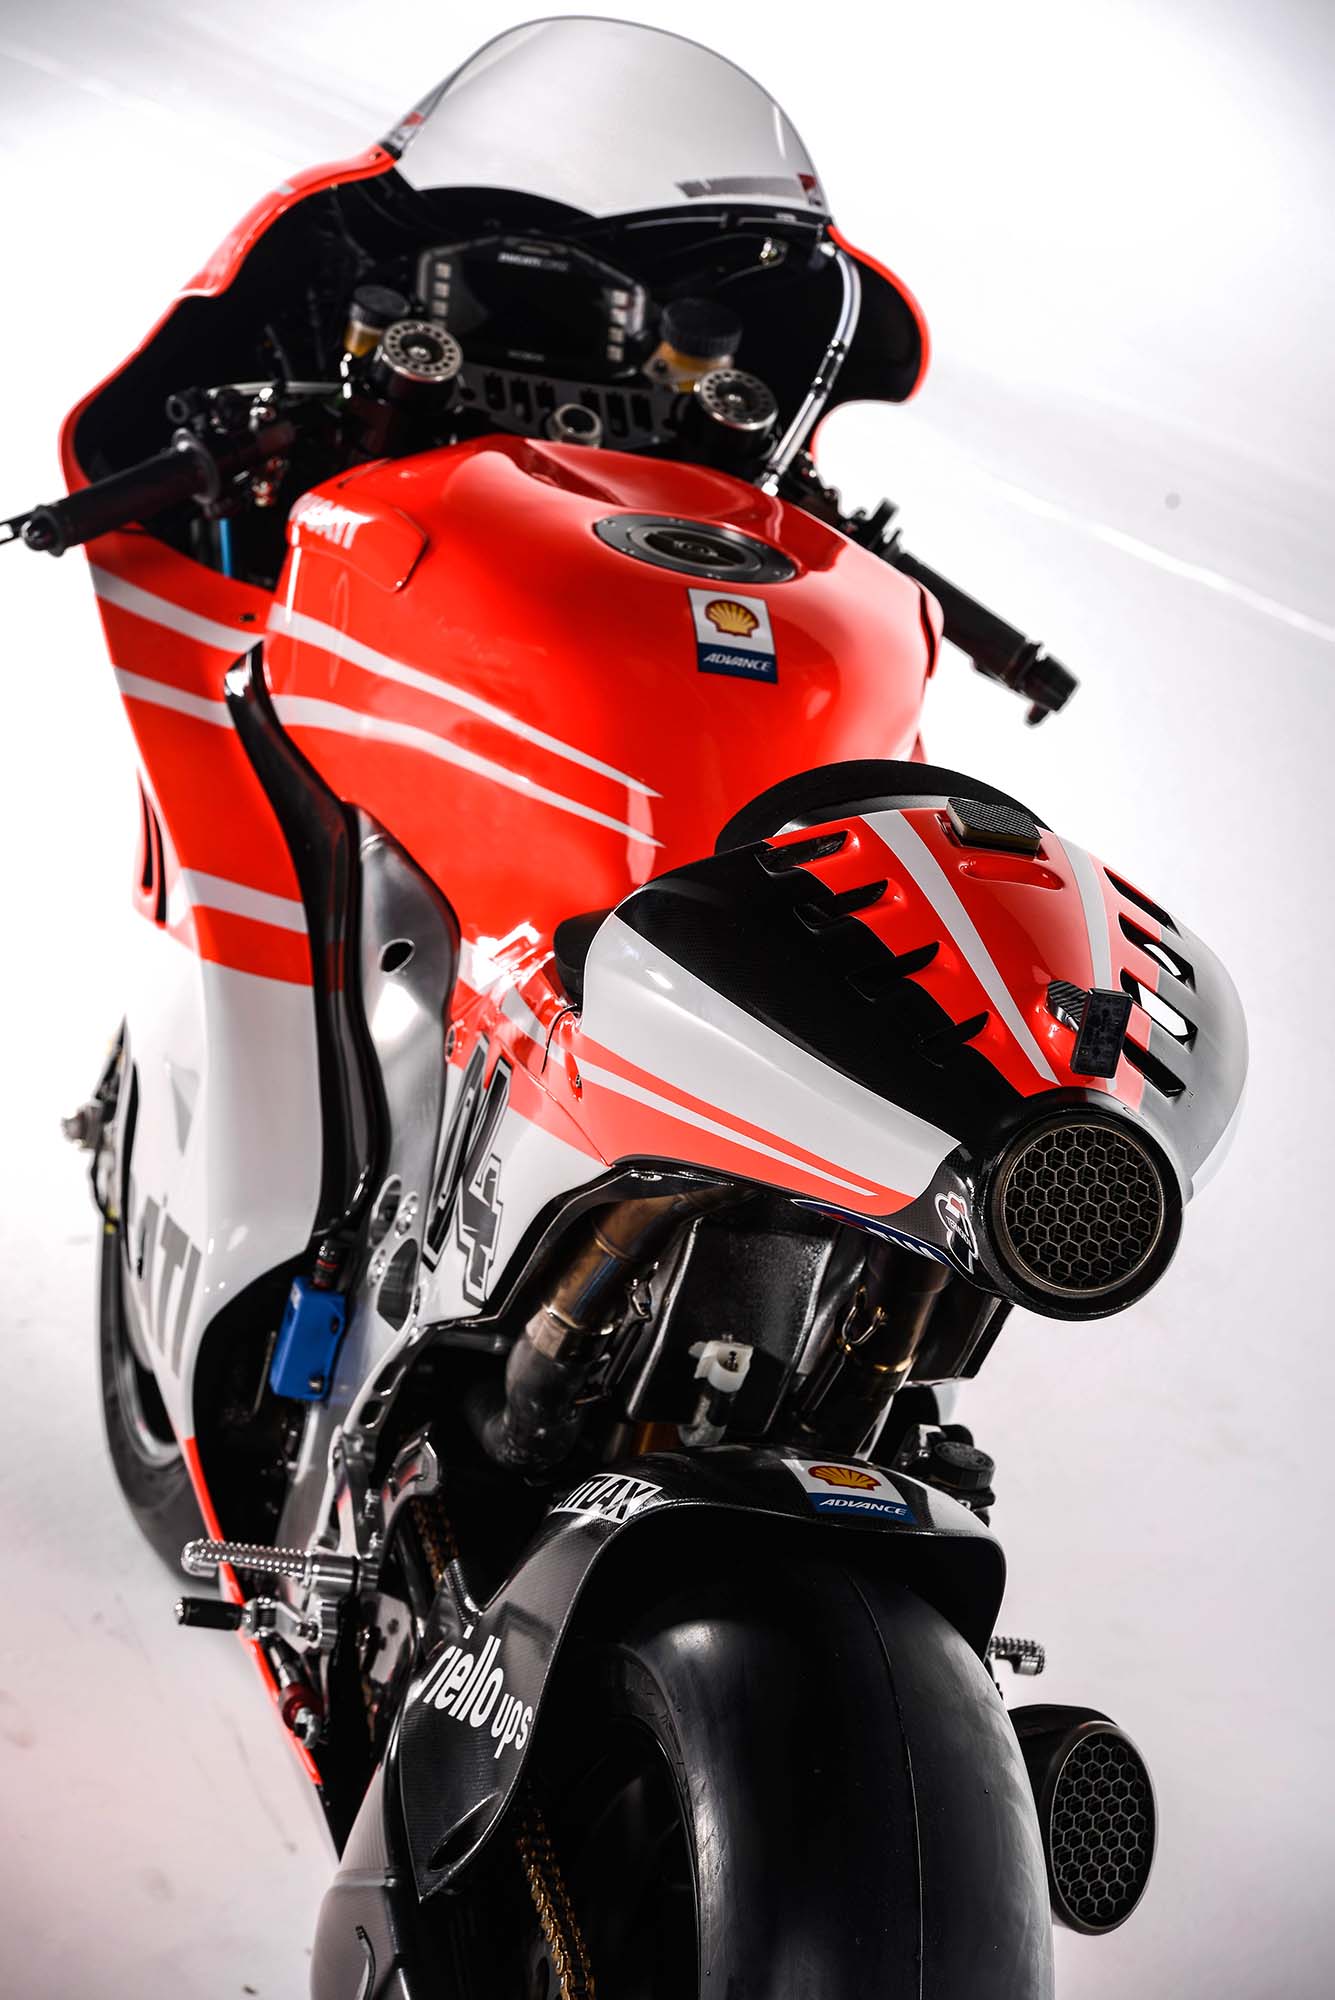 MotoGP, motor terbaru ducati-desmosedici-gp13: Spesifikasi dan Foto Motor Ducati Desmosedici GP13